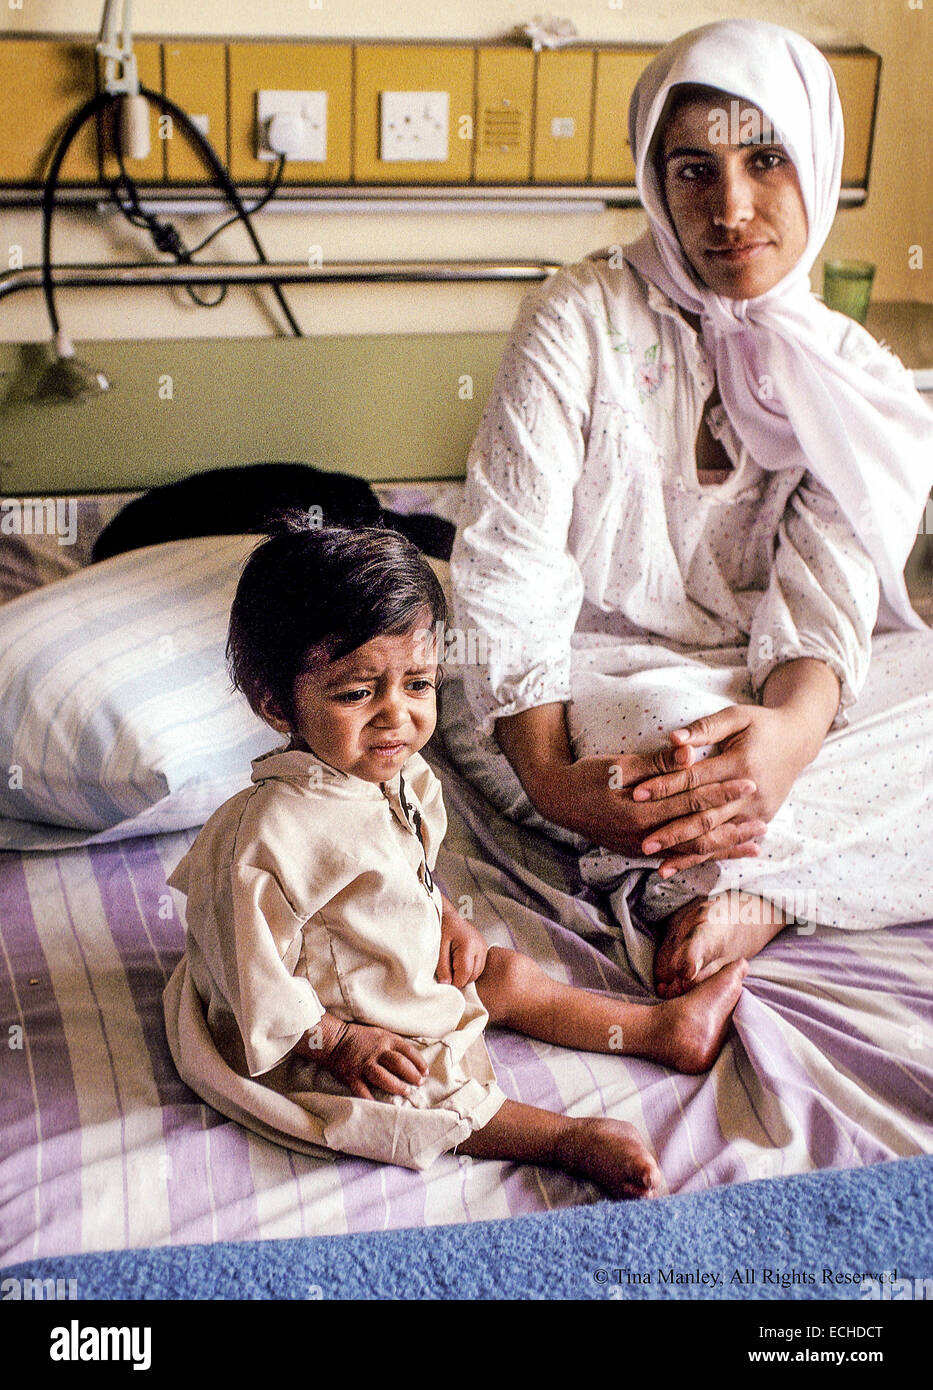 Muslimische Mutter und Baby in Saddam zentralen Lehrkrankenhaus in Bagdad, Irak.  Mehr Babys leiden an Durchfall, weil die Kläranlage im Golfkrieg zerstört wurde und unreines Wasser in Babynahrung verwendet wird.  Die einzige Medizin, die in den Krankenhäusern des Irak ist Glukose, eine Situation, die Schuld auf die UN-Sanktionen gegen den Irak.  Mütter mit Kindern im Krankenhaus bleiben und Essen von zu Hause mitbringen. Stockfoto